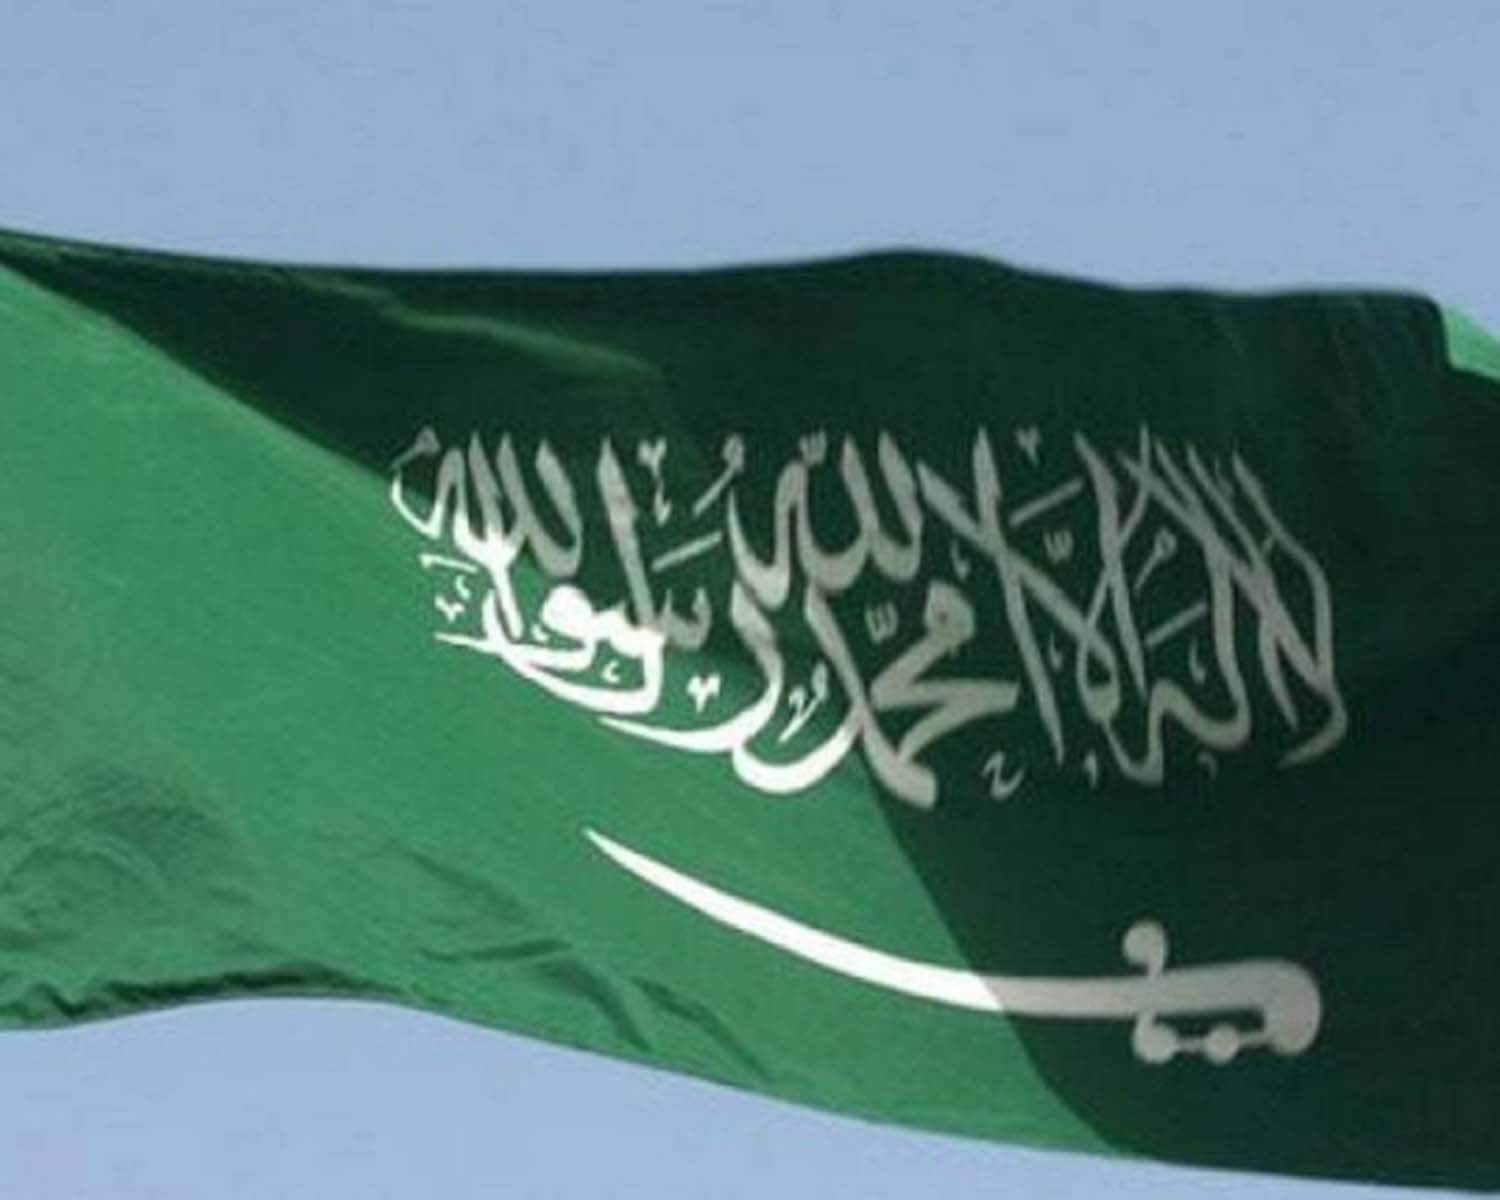 Saudi Arabia releases eight people held in activist crackdown